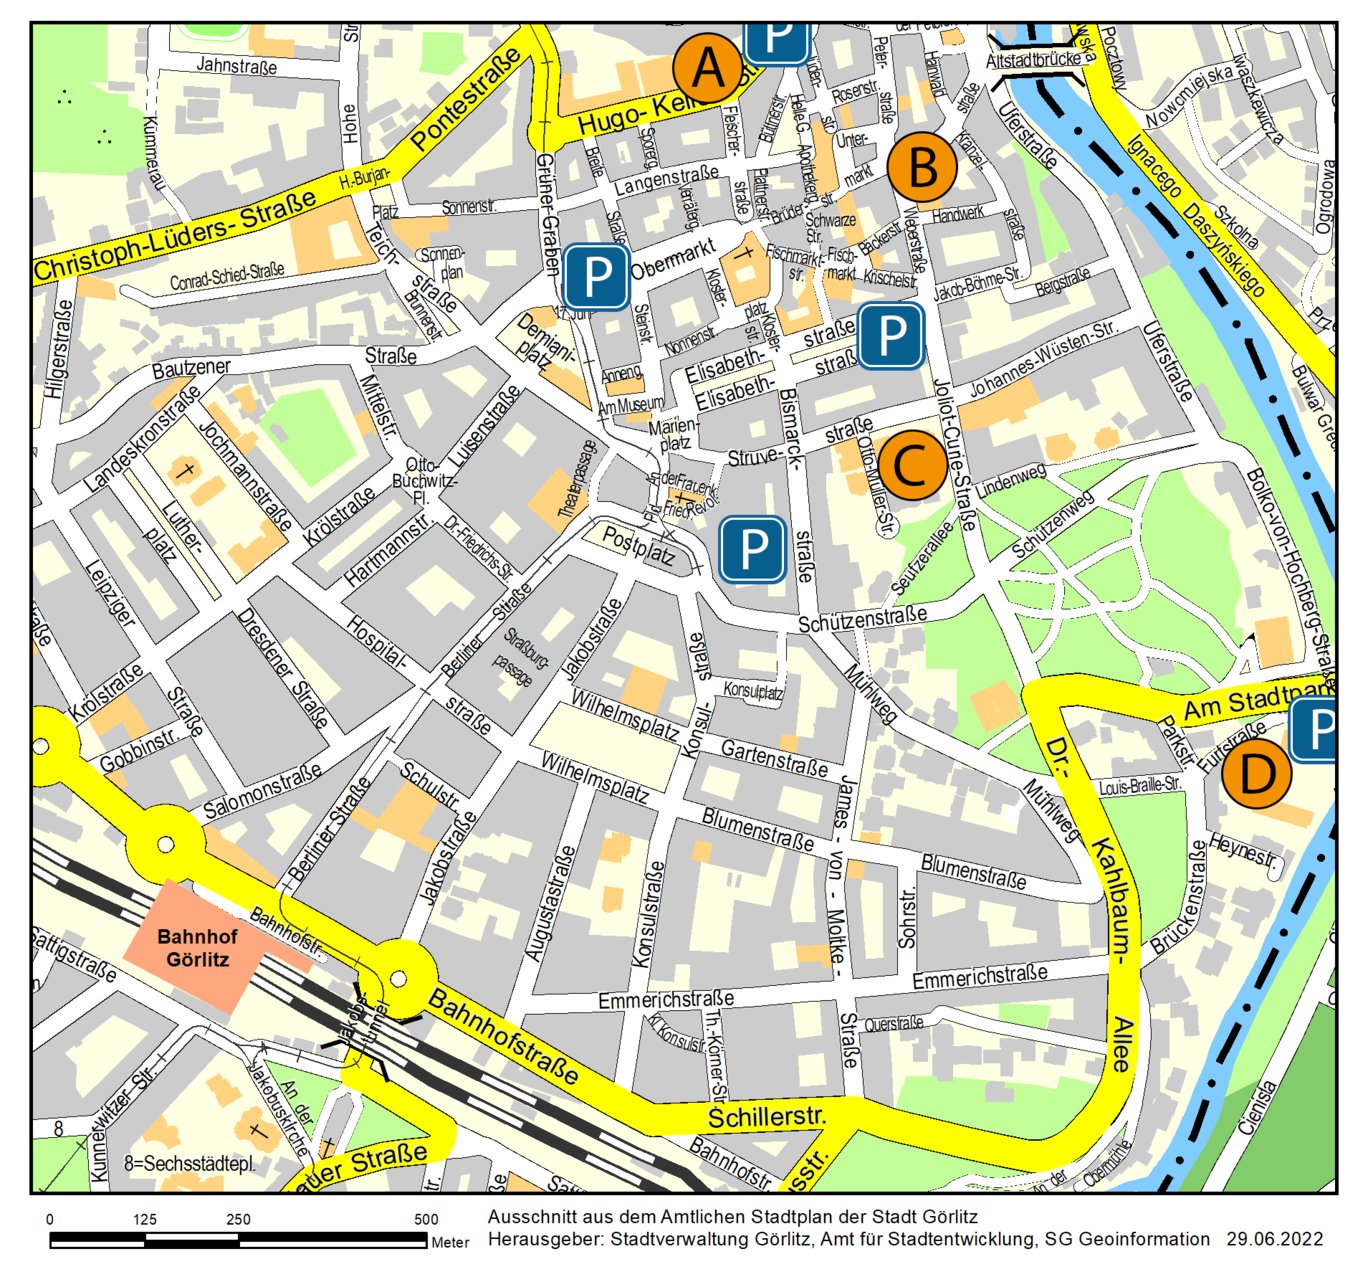 Karte der Stadt Görlitz mit Veranstaltungsorten